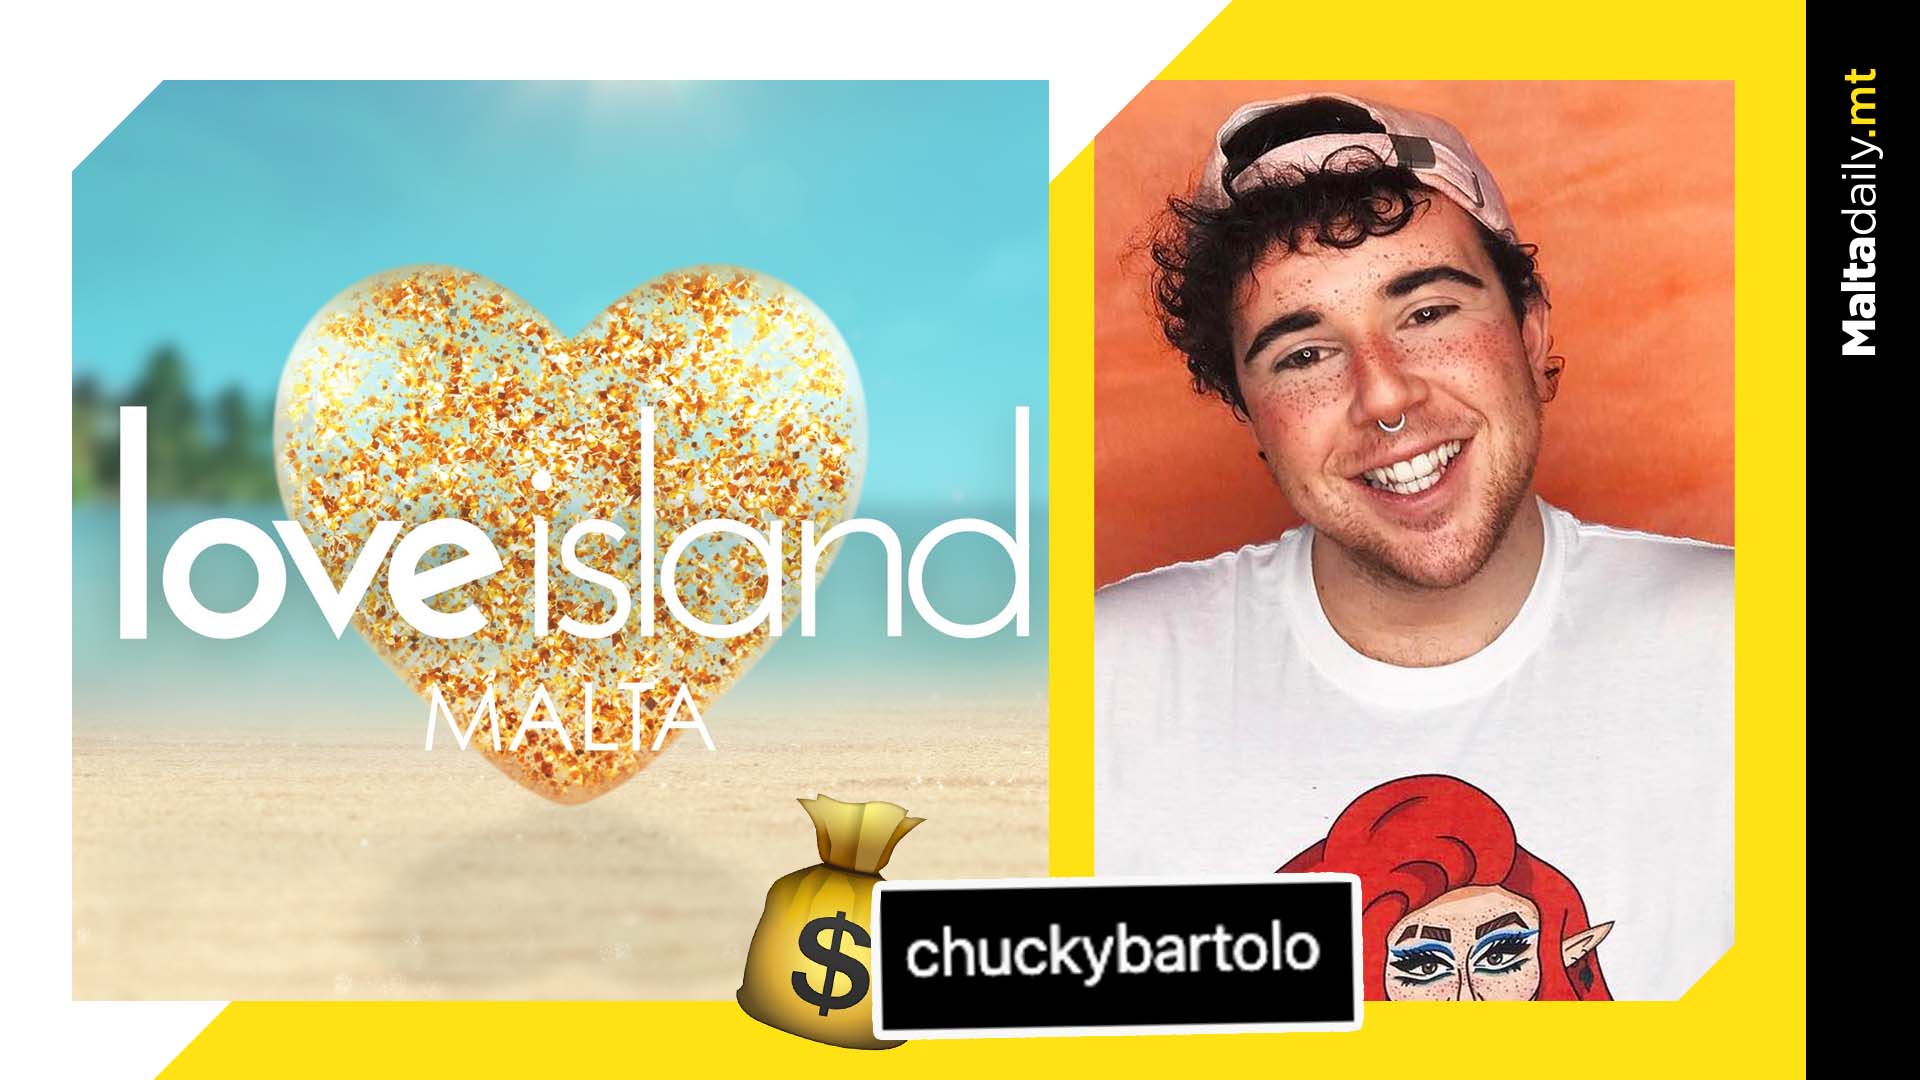 Chucky Bartolo announced as Love Island Malta narrator